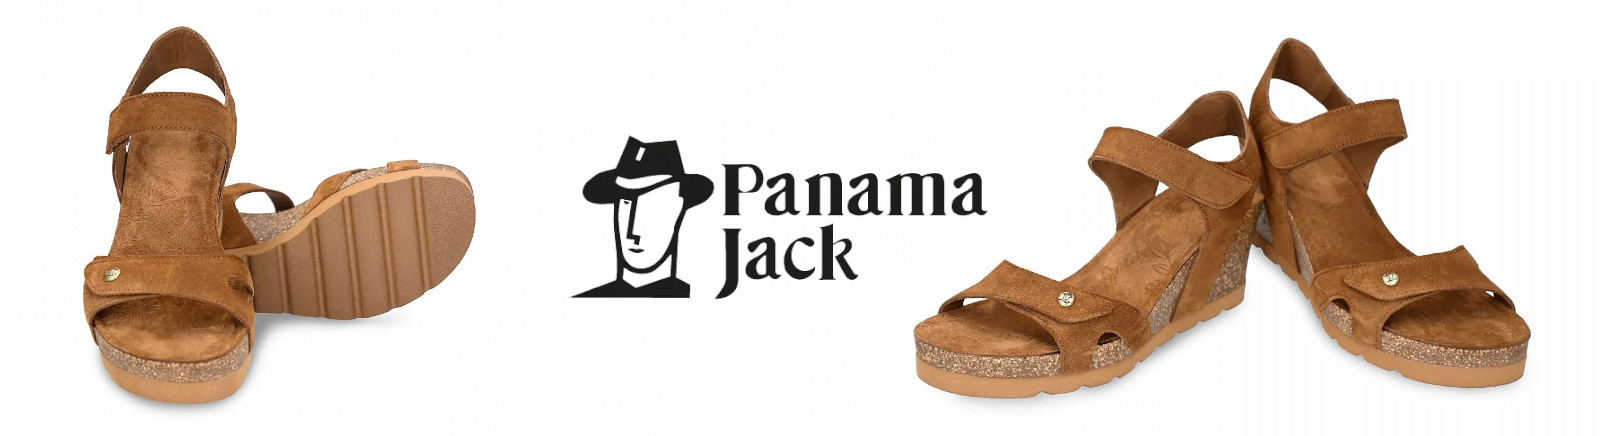 Juppen: Panama Jack Halbschuhe für Herren online shoppen